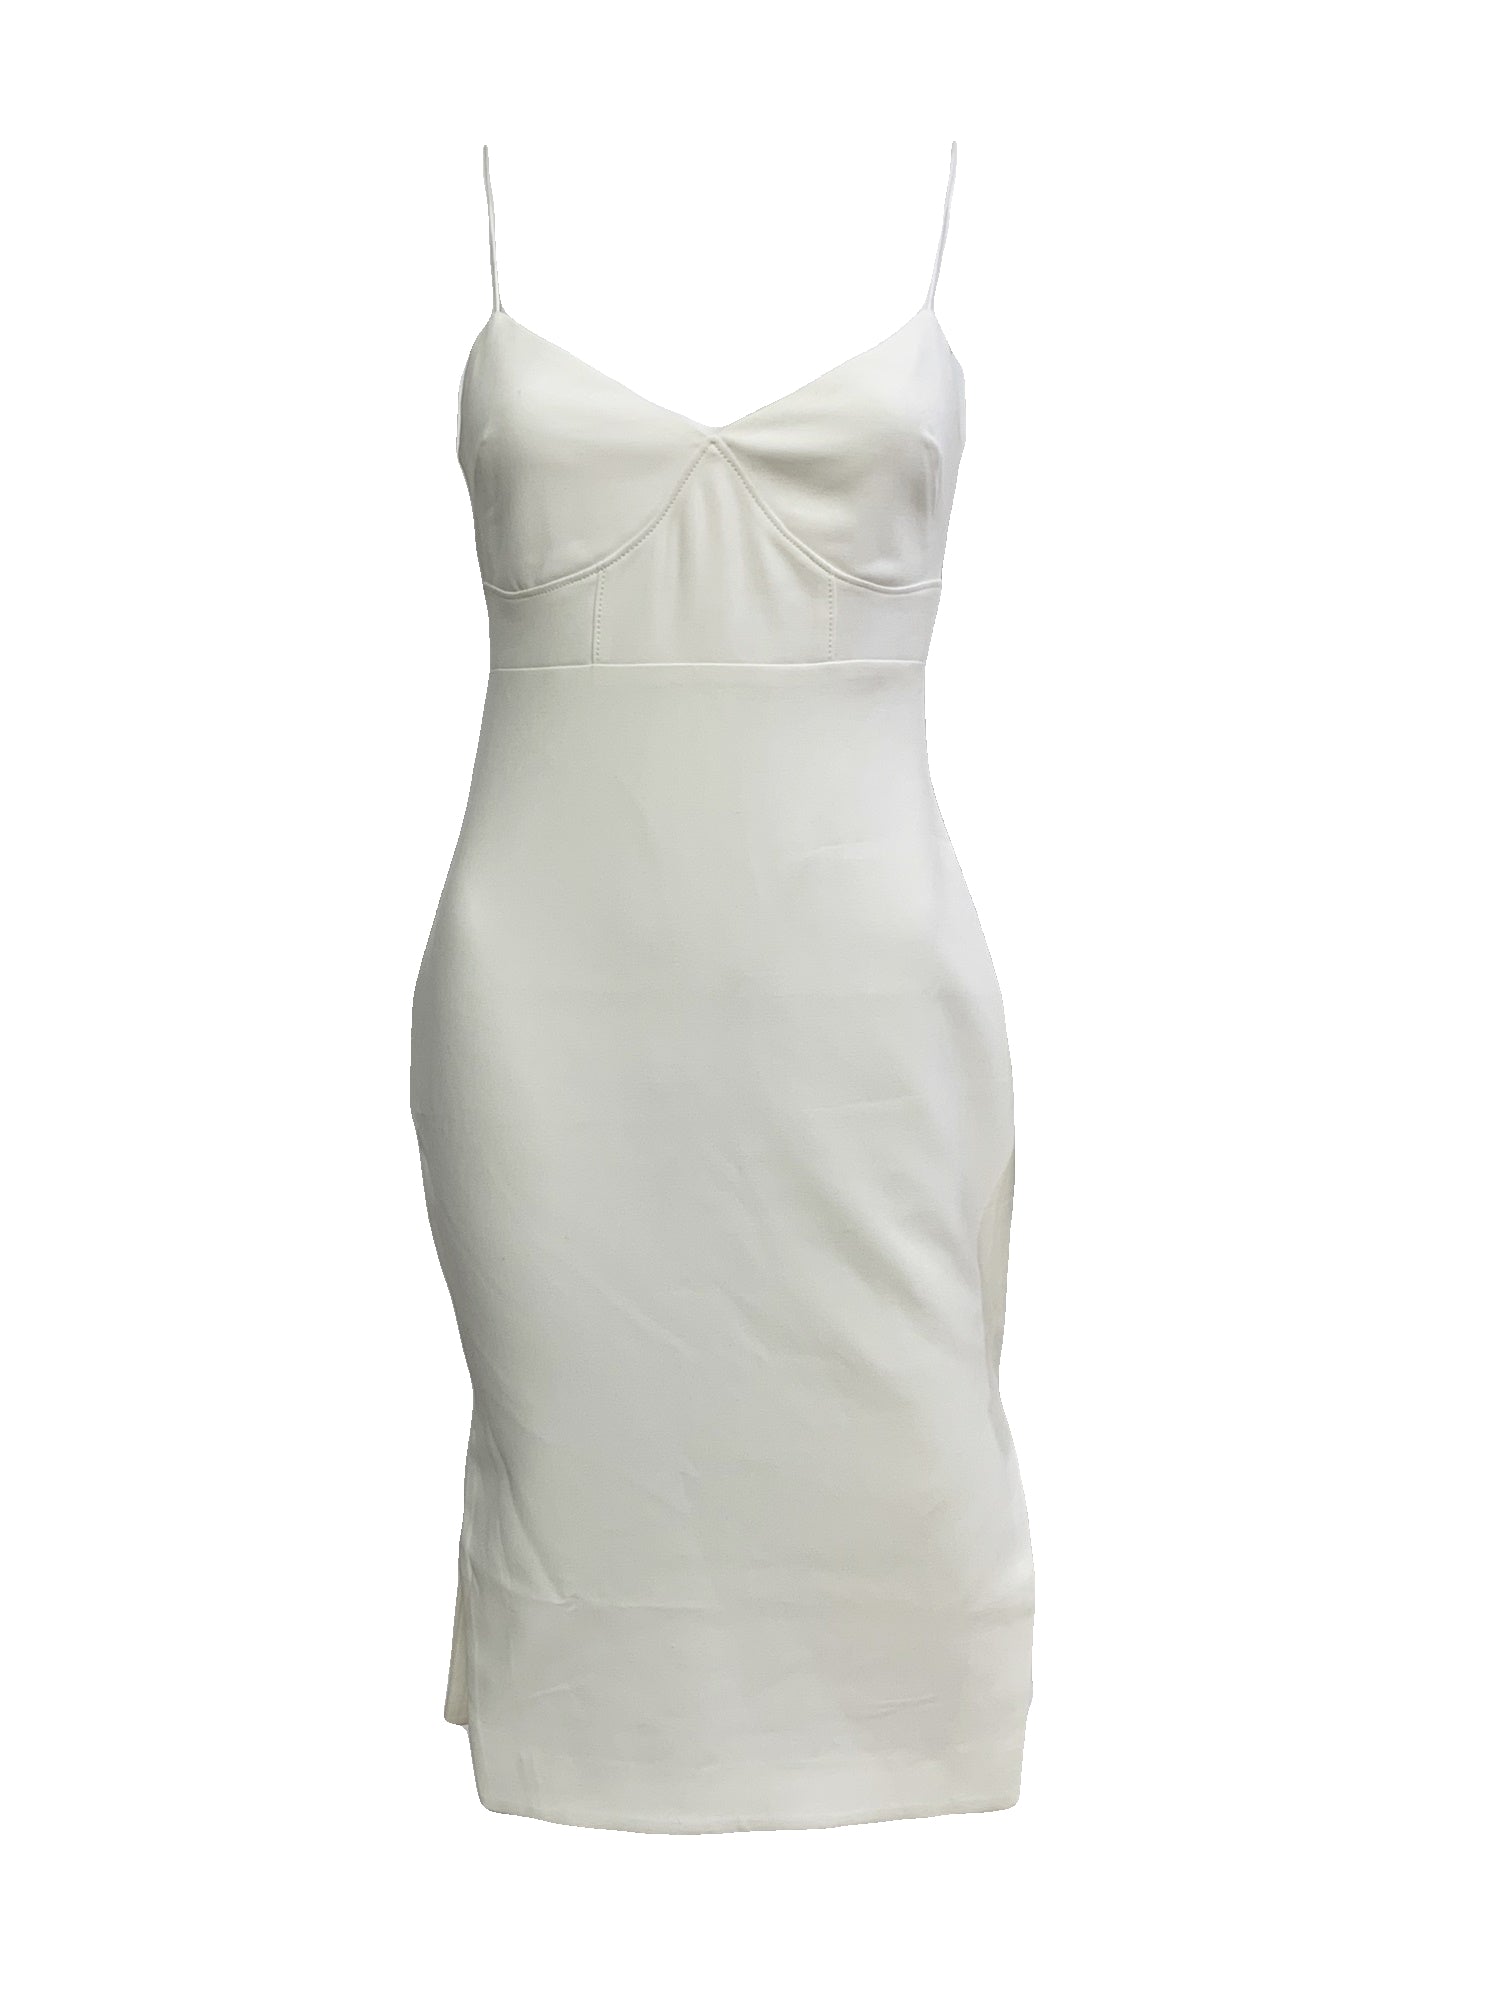 Caprio Dress Size 2 NWT